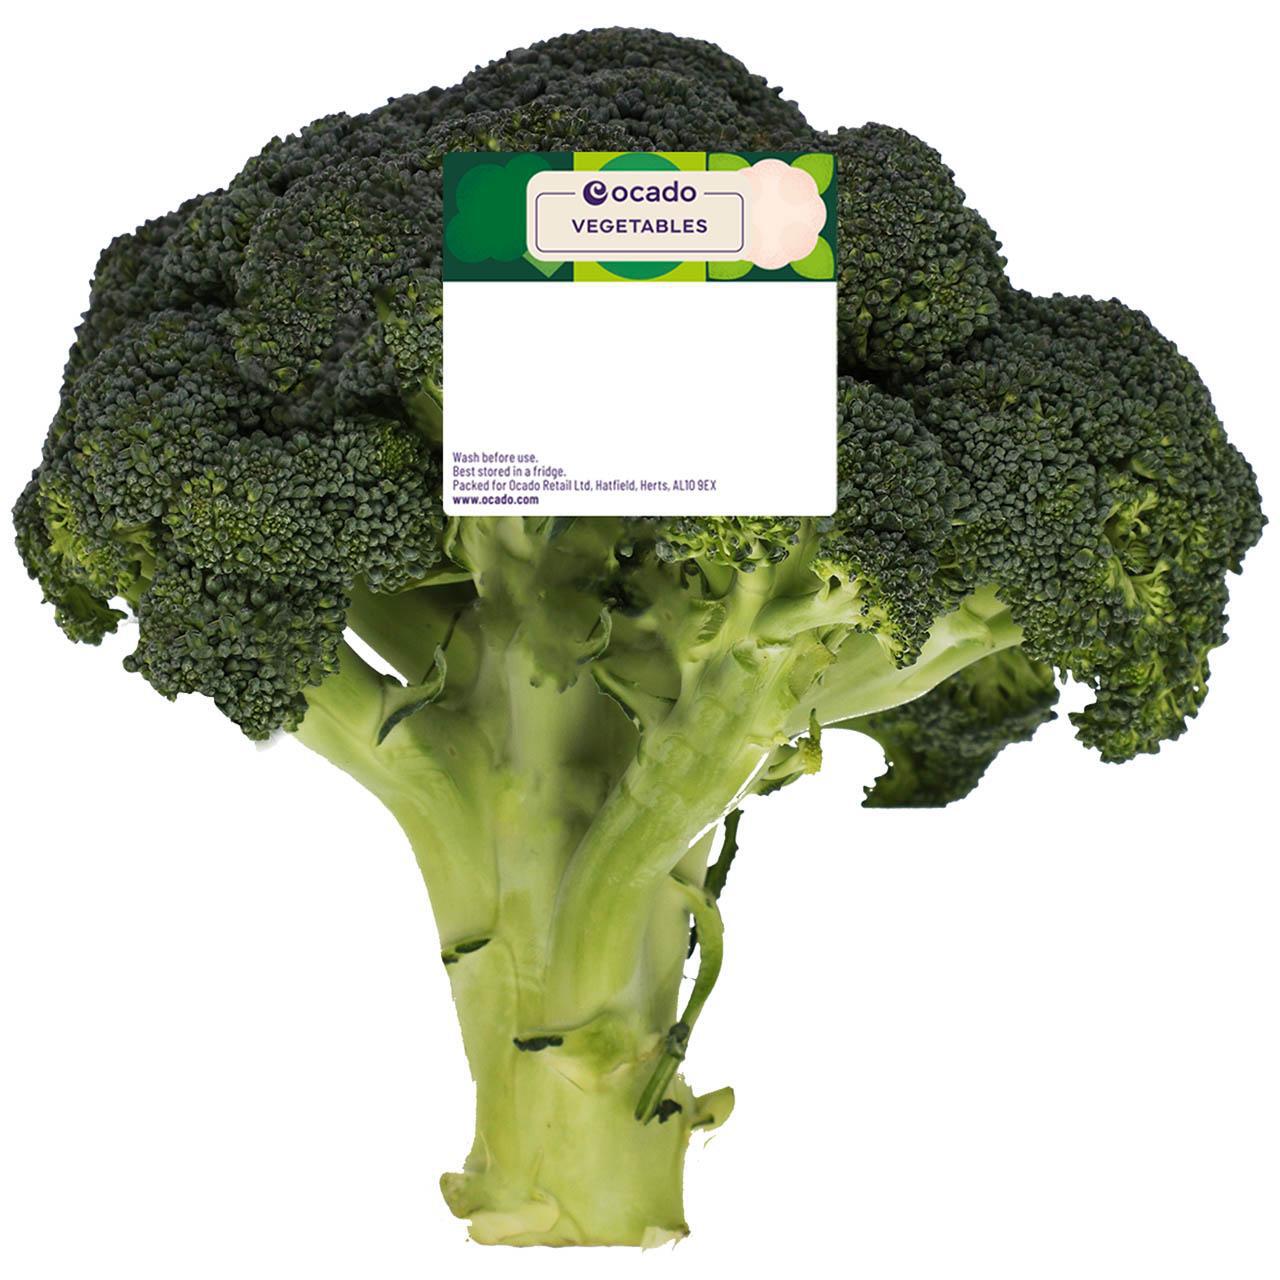 Ocado Broccoli 350g